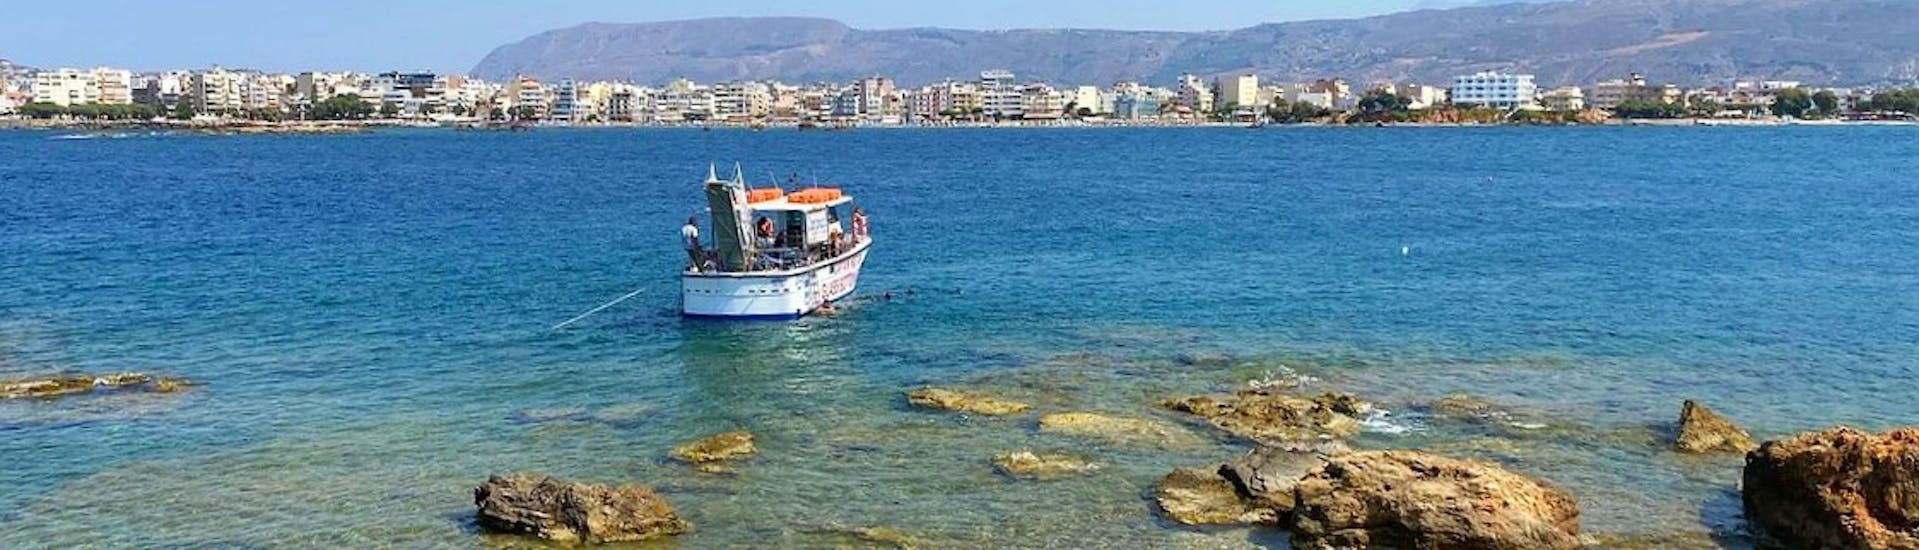 Das Boot von Captain Nesor haltet am Strand während der Glasbodenbootstour von Chania nach Lazaretta.